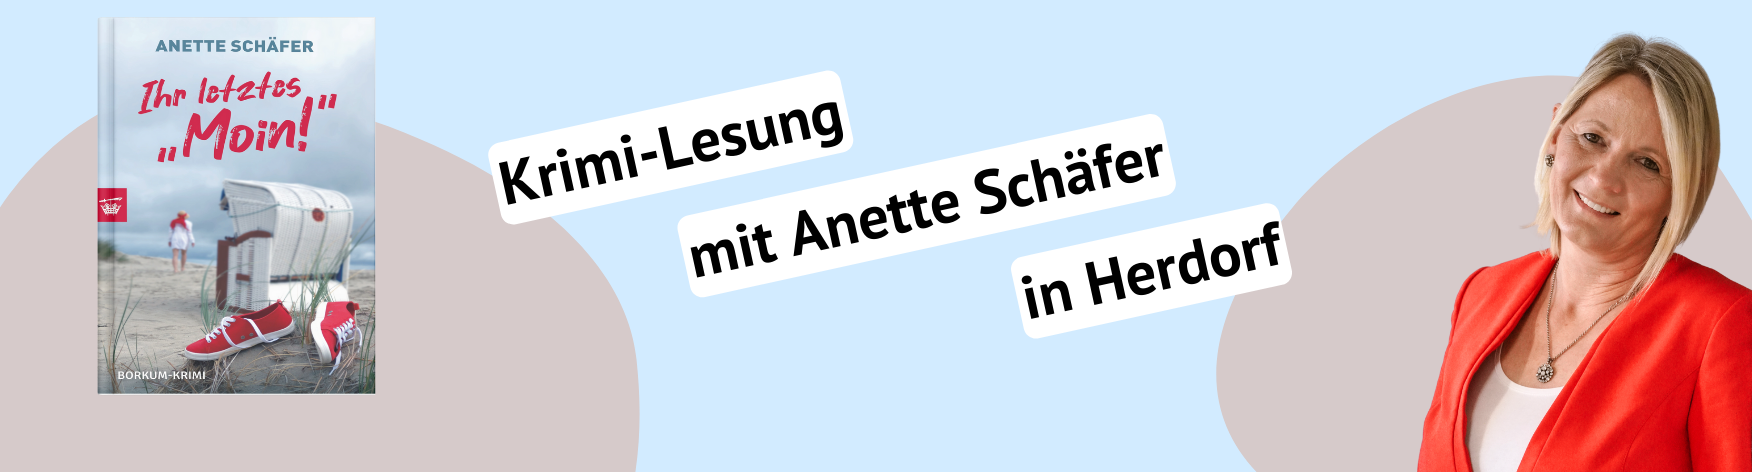 Krimilesung mit Anette Schäfer in Herdorf - Buchhandlung Braun.png